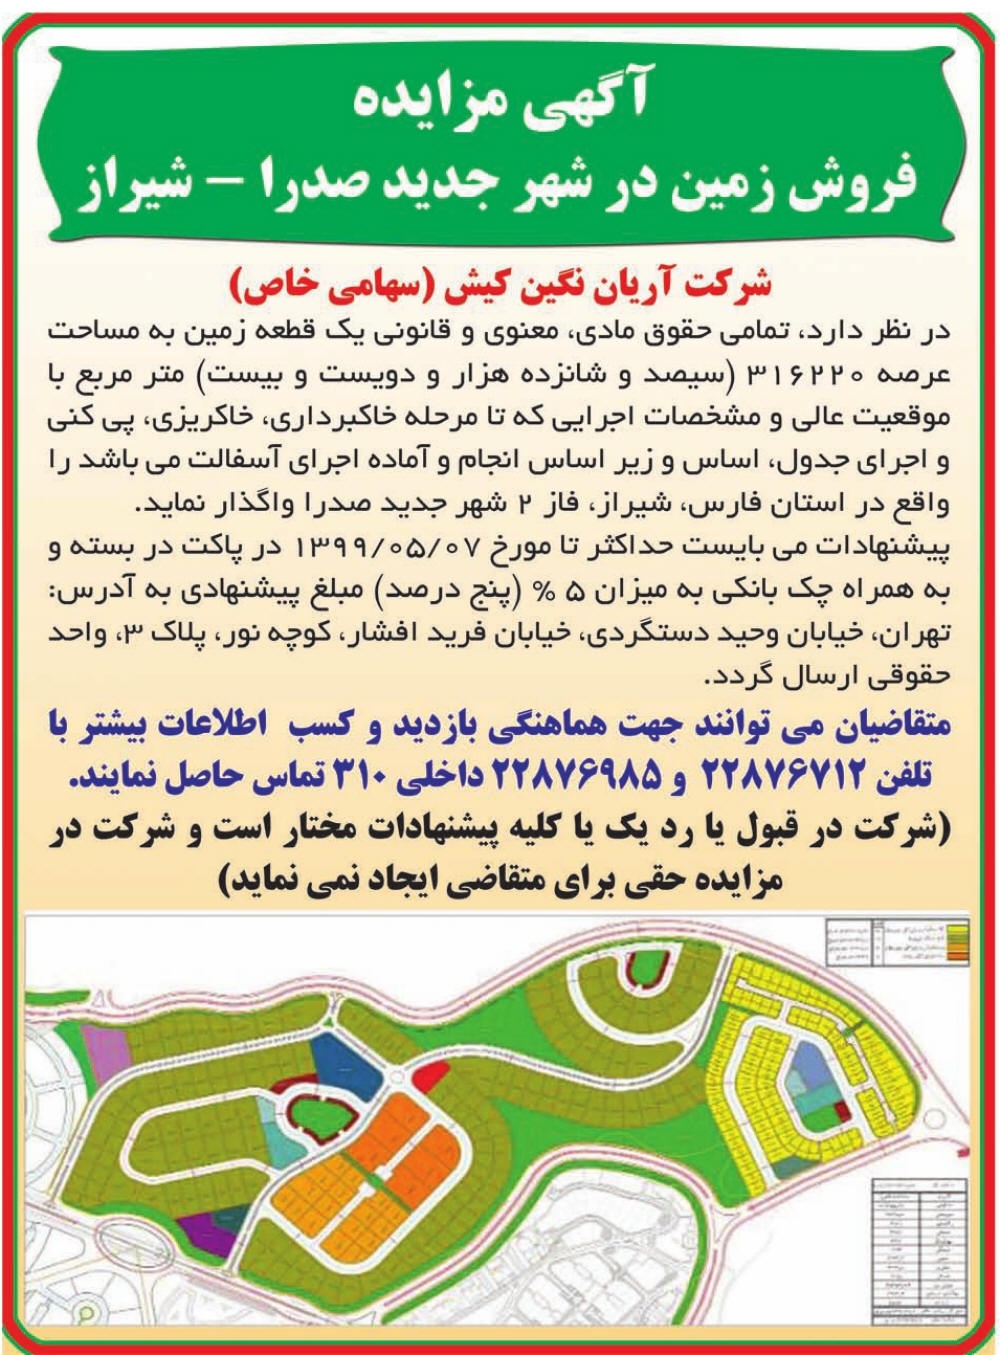 آگهی مزایده فروش زمین در شهر صدرا چاپ شده در روزنامه اطلاعات